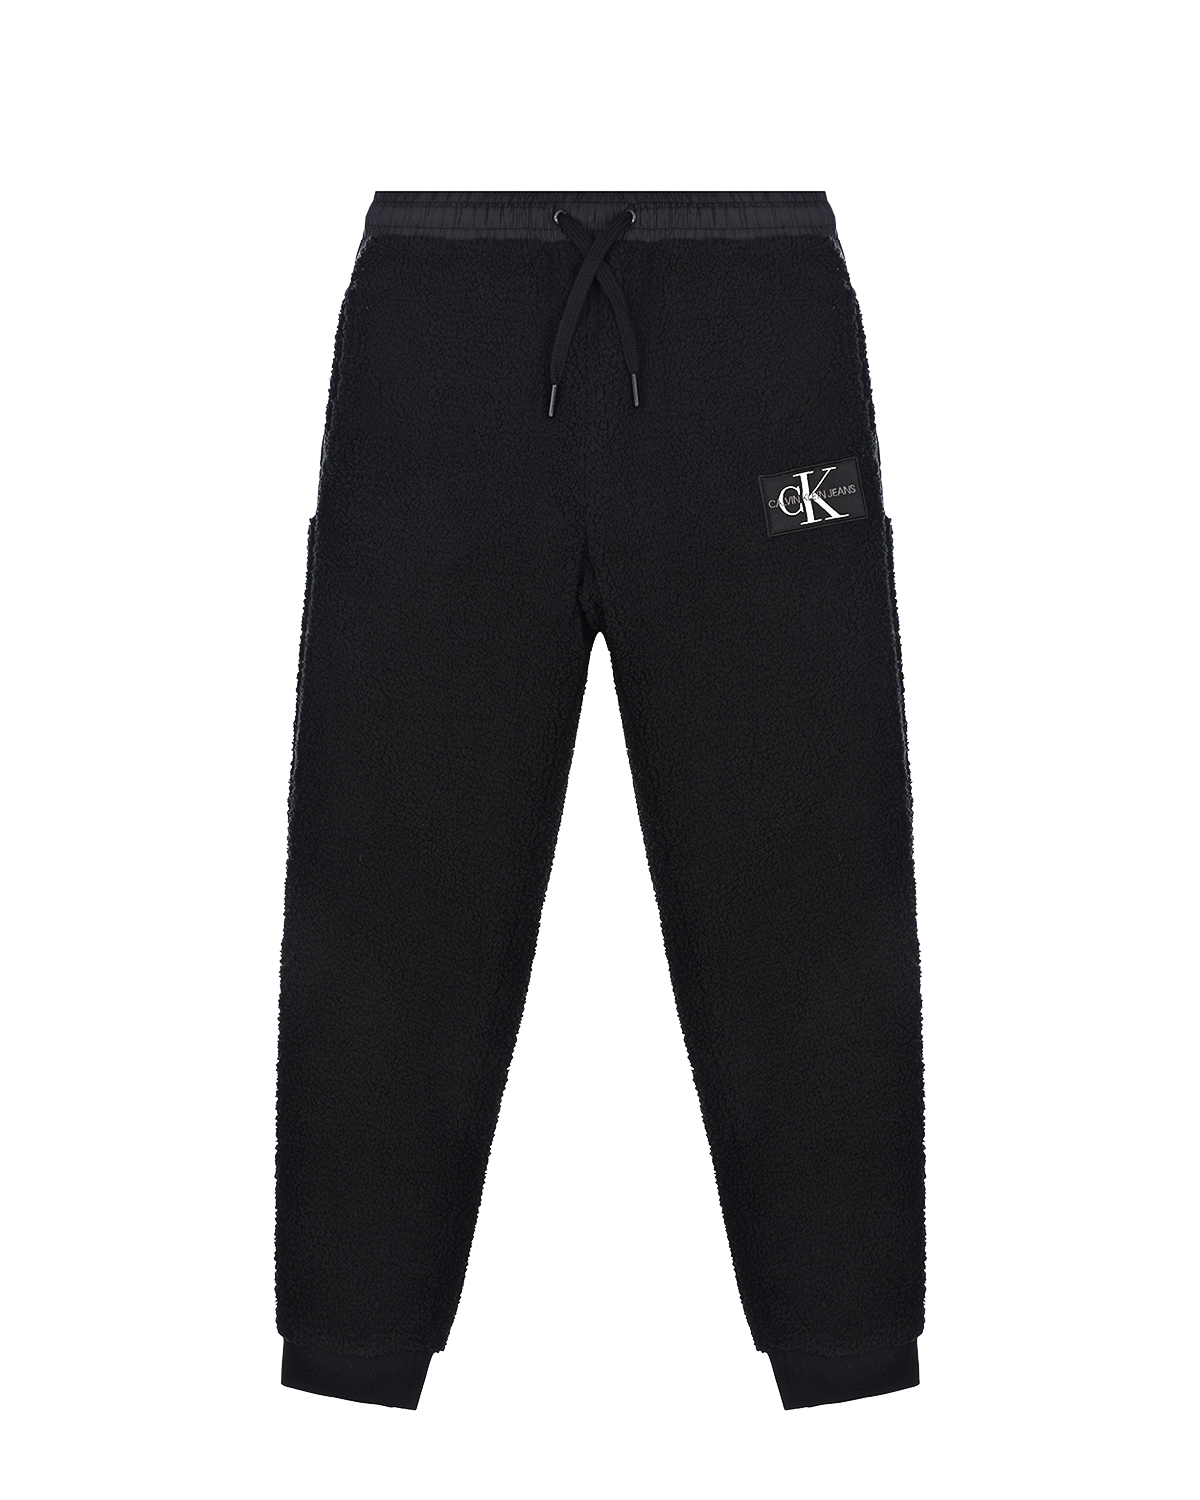 Черные спортивные брюки Calvin Klein детские, размер 164, цвет черный - фото 1